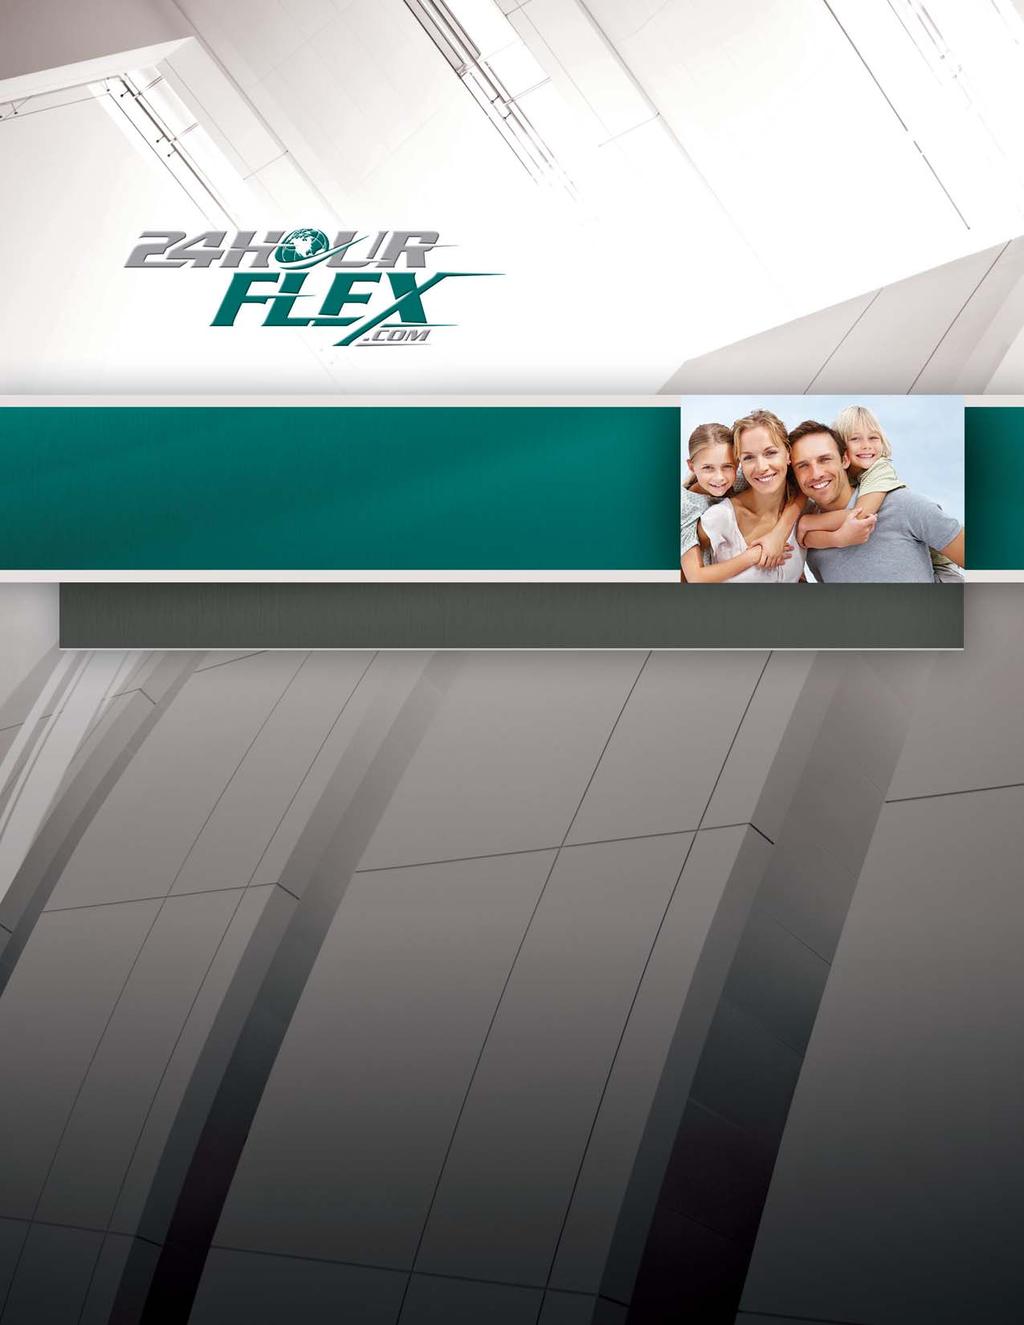 FLEX ENROLLMENT GUIDE Email: info@24hourflex.com Help Center: 303-369-7886, 800-651-4855 24HourFlex Fax: 303-369-0003, 800-837-4817 24HourFlex.